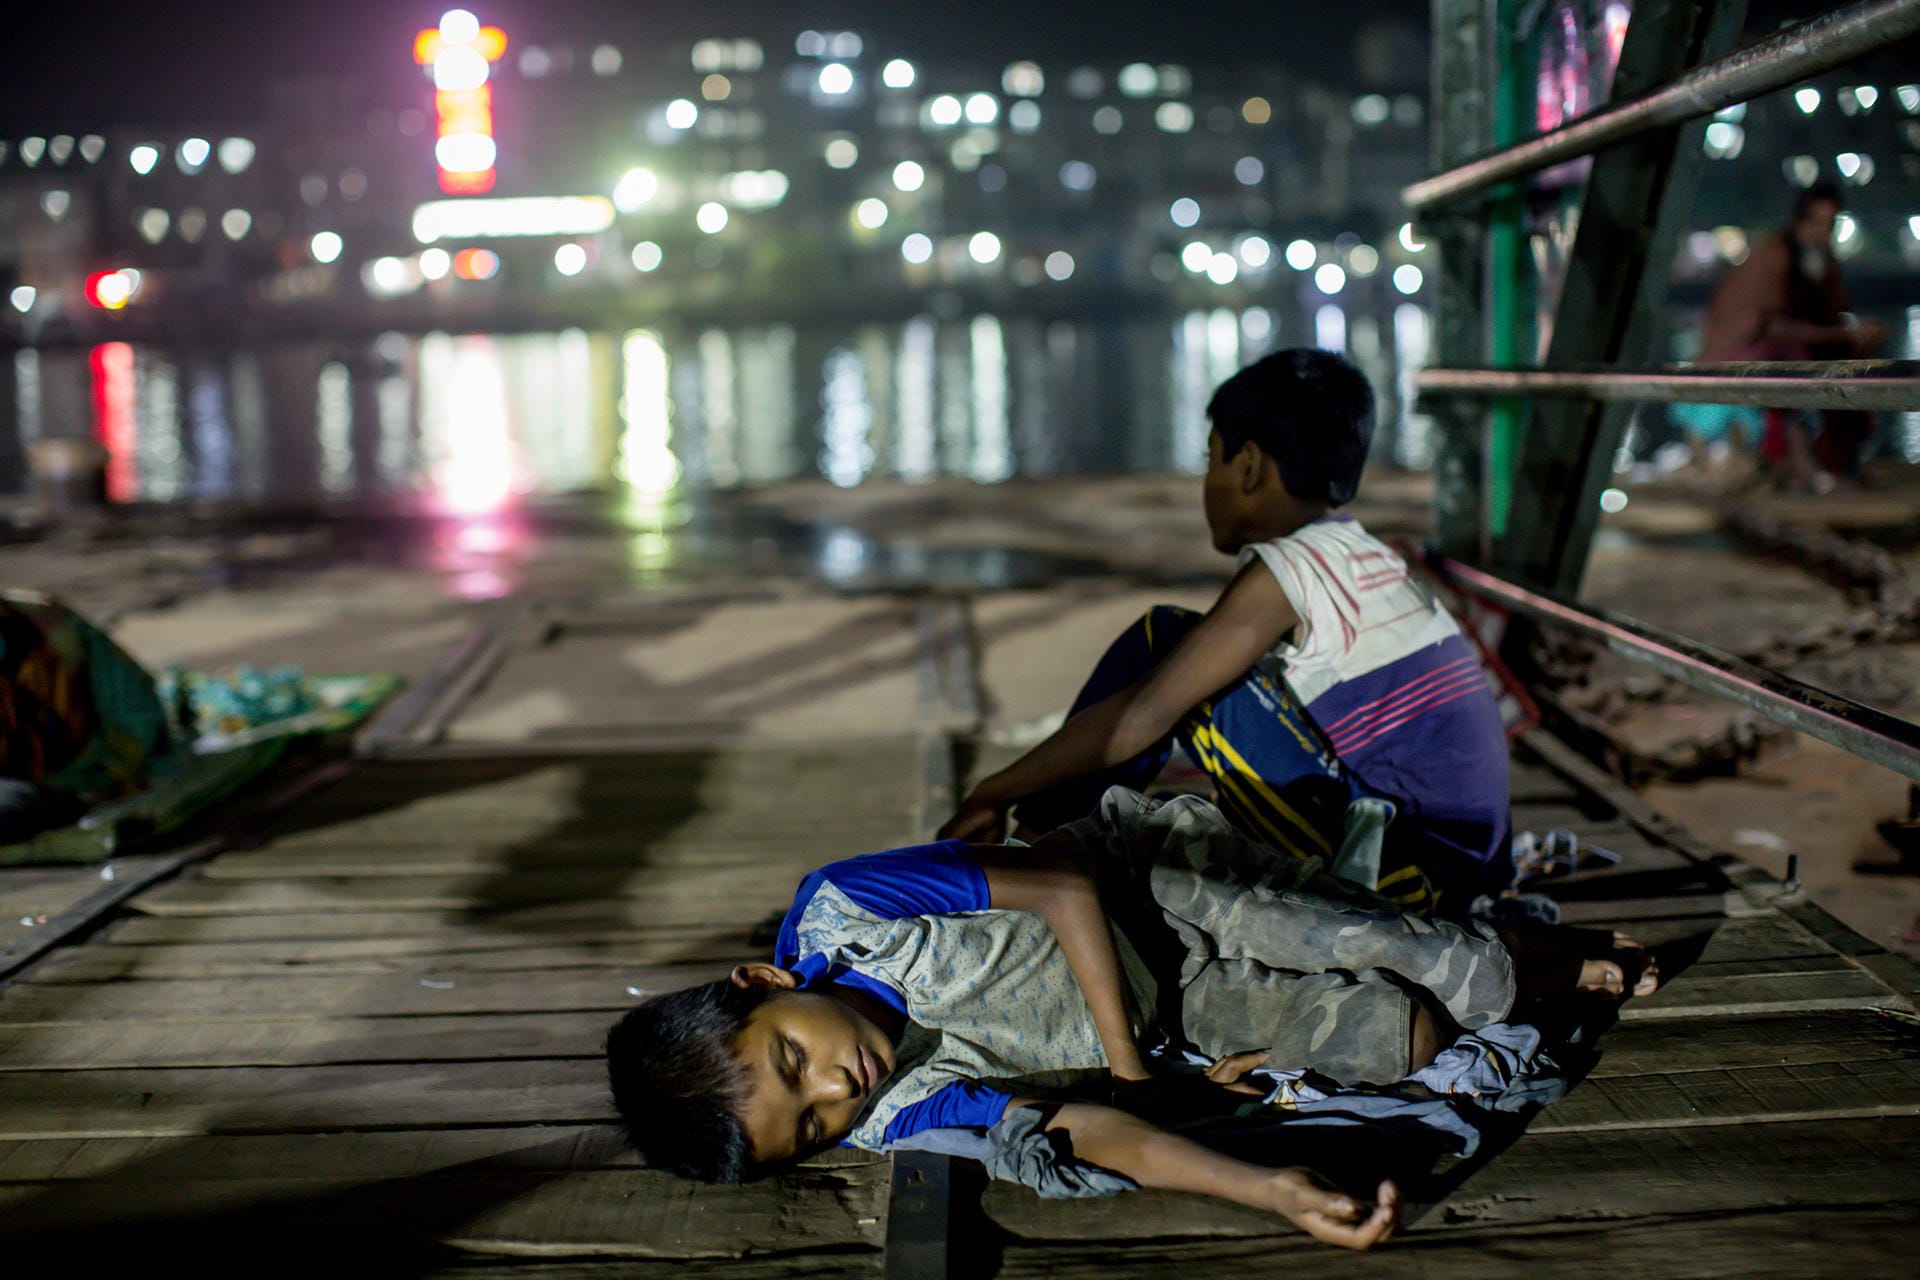 Der Fotograf Suman Yusuf wird von der Unicef-Jury ehrenvoll erwähnt. Er hat den Schlaf der Straßenkinder in Dhaka, der Hauptstadt von Bangladesch, dokumentiert. Sie liegen auf dem Bürgersteig, in Gassen oder an Bahnhöfen. Zwischen sich und dem Boden oft nur wenige Lumpen. Yusuf nennt sein Bild "Sleeping Beauty" und will damit an die Würde und Tapferkeit der hunderttausenden Straßenkinder erinnern.